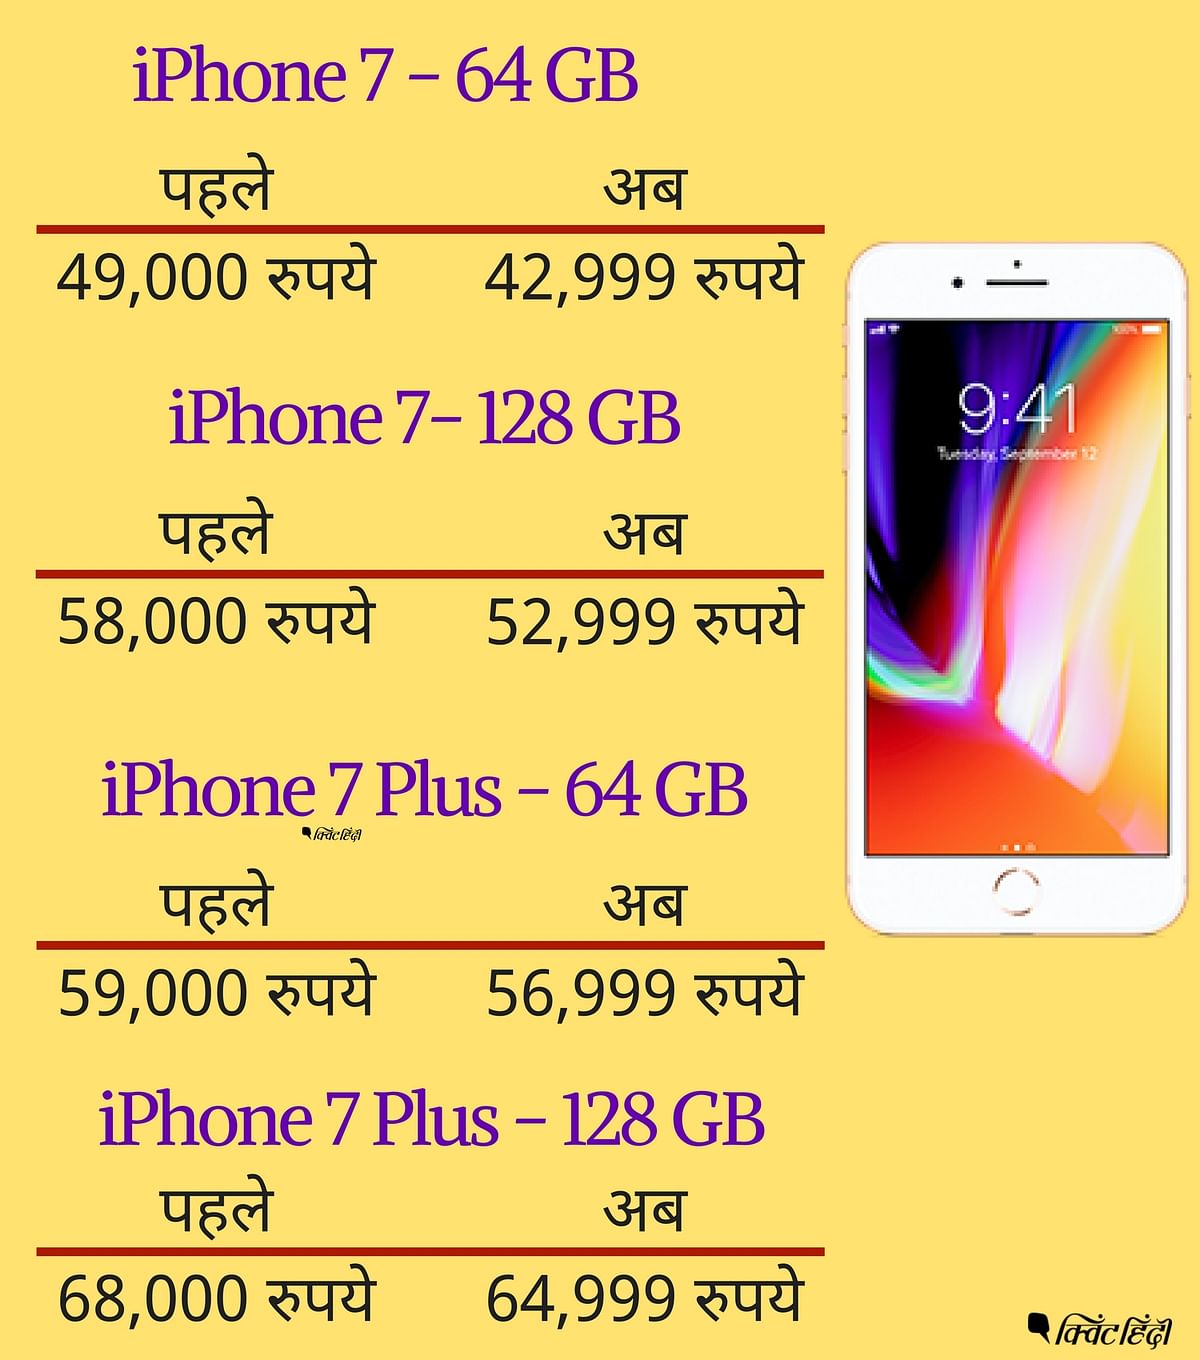 एपल आईफोन 8000 रुपये का कैशबैक और 18000 रुपये तक एक्सचेंज ऑफर भी दे रहा है.&nbsp;